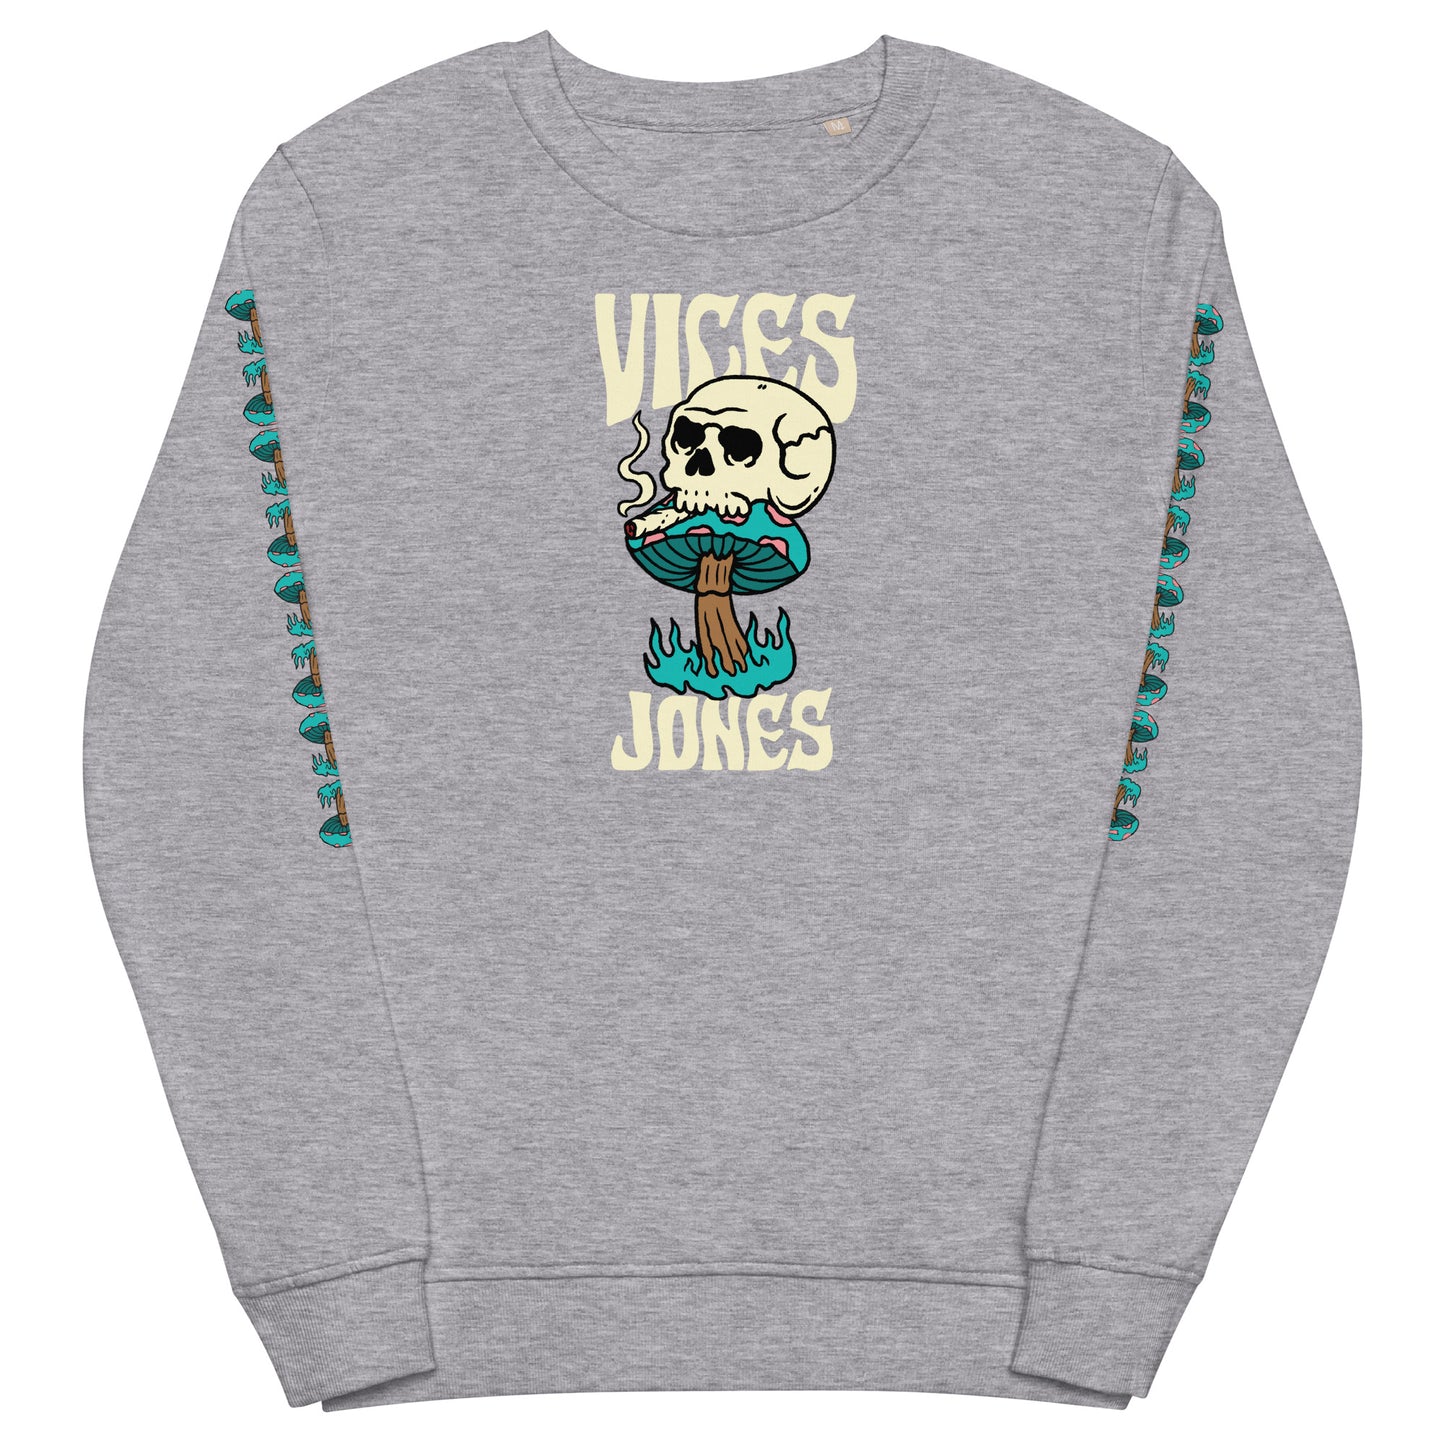 Jones - Vices Sweatshirt